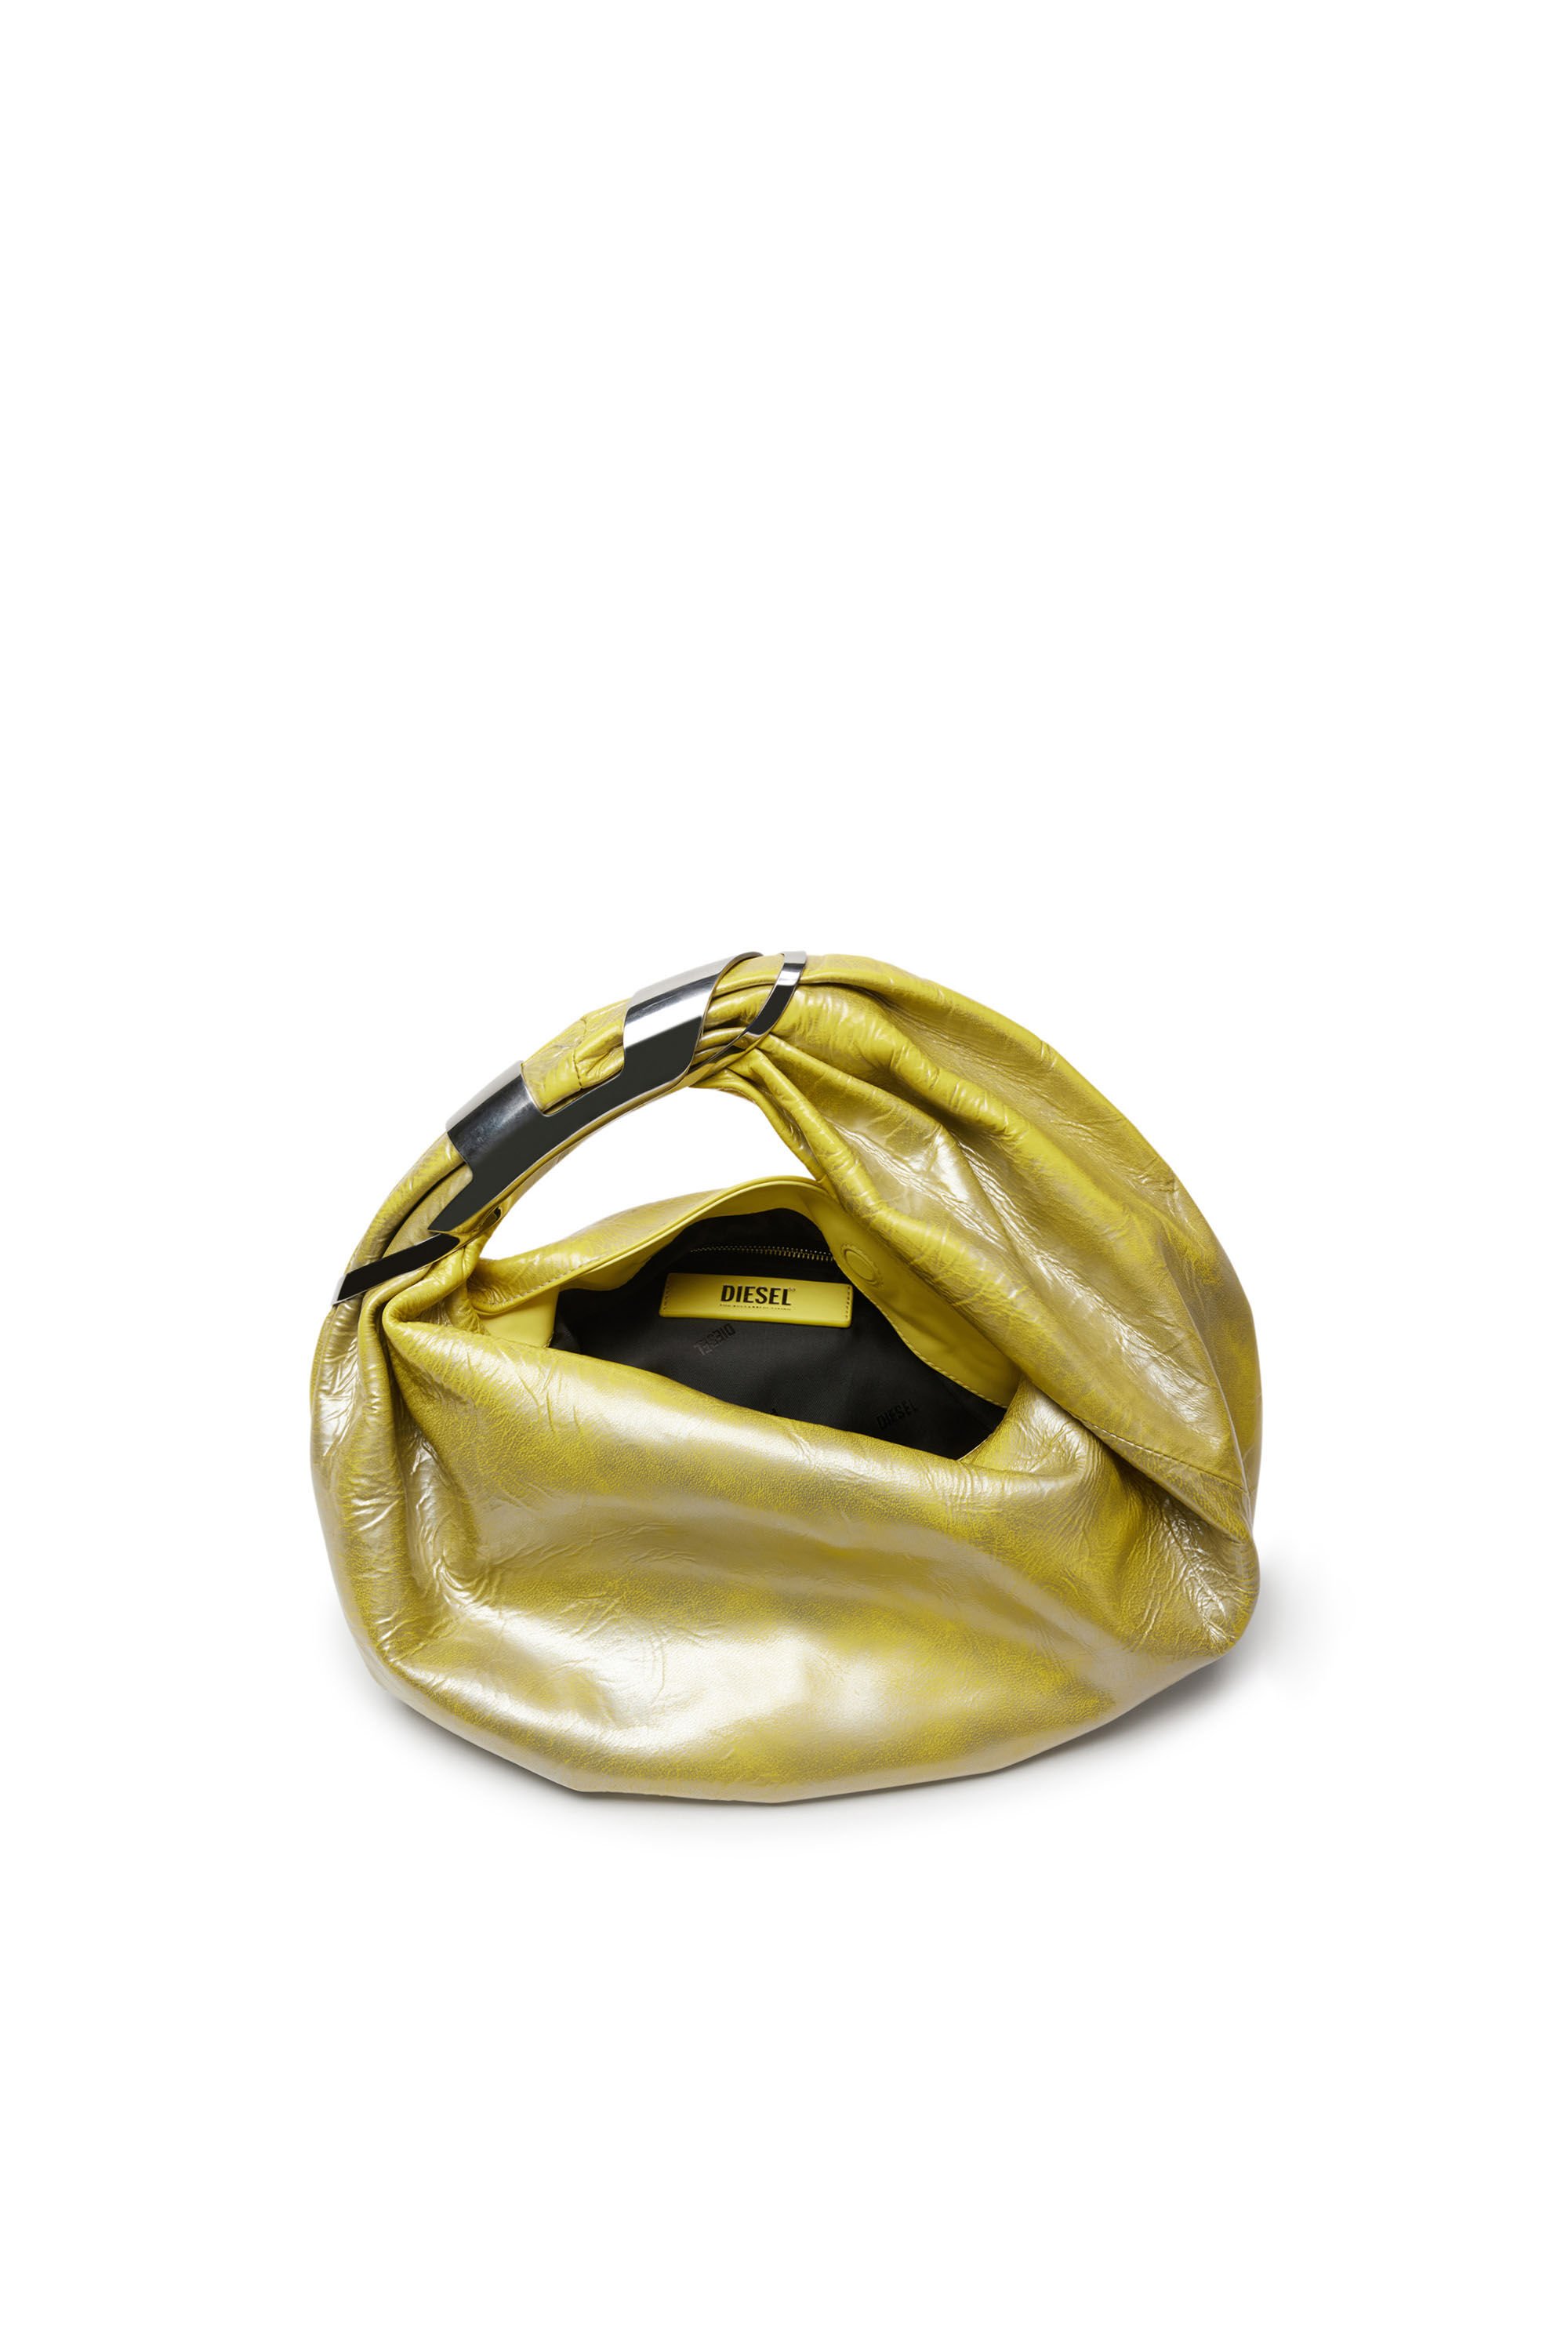 Diesel - GRAB-D HOBO S, Woman Grab-D S-Hobo bag in metallic leather in Yellow - Image 5